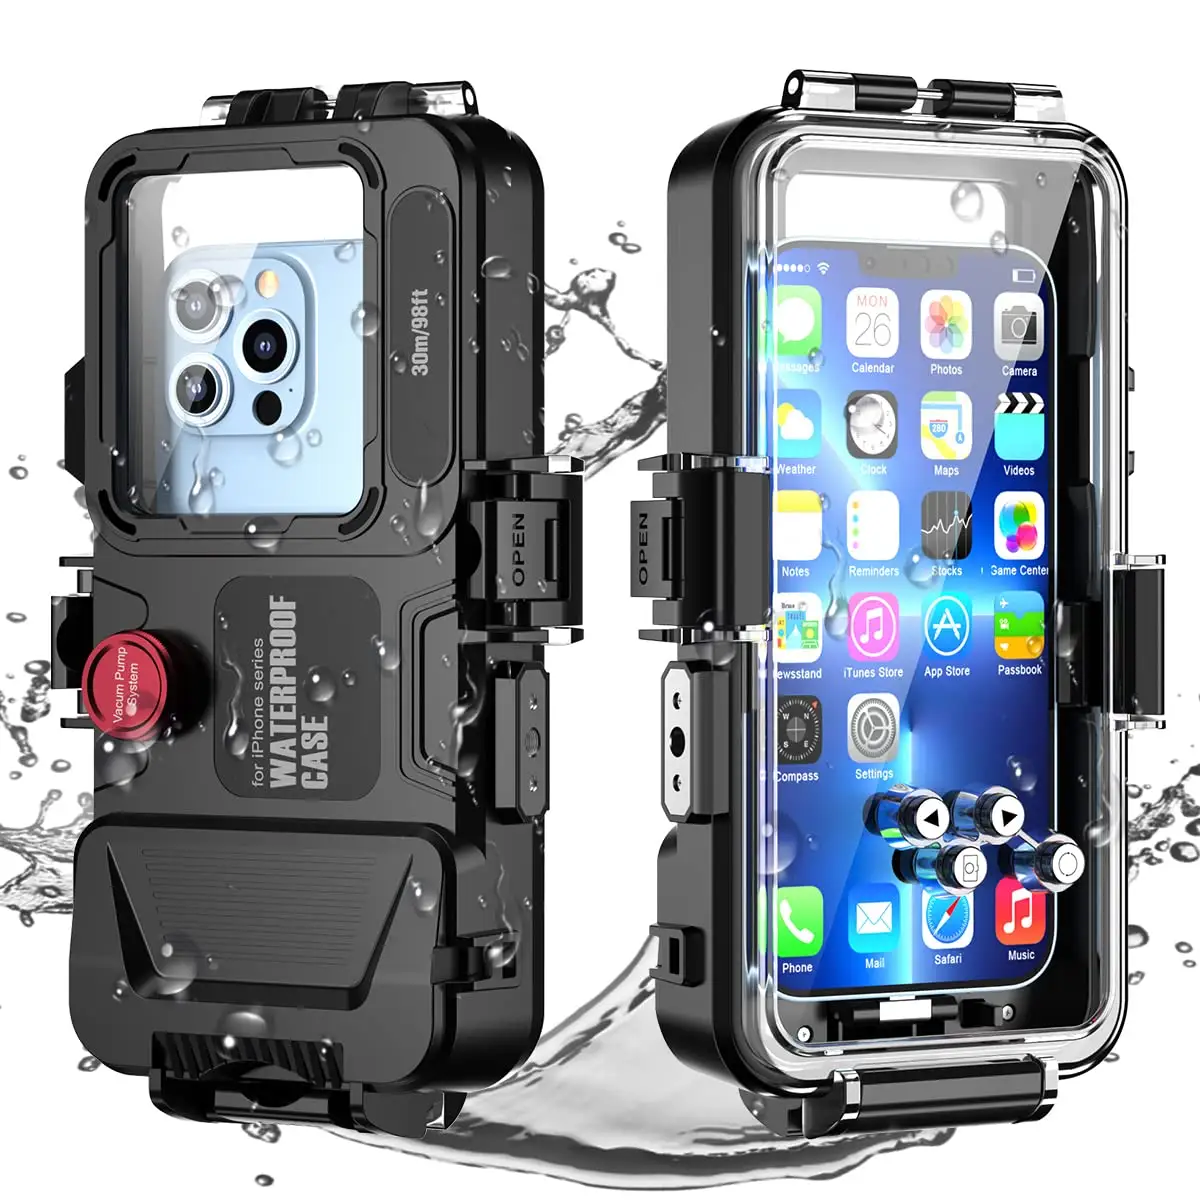 निविड़ अंधकार तैराकी के लिए सुरक्षात्मक iPhone श्रृंखला 98FT/30M पानी के नीचे फोटोग्राफी आवास ip68 गहरे समुद्र में डाइविंग फोन के मामले में